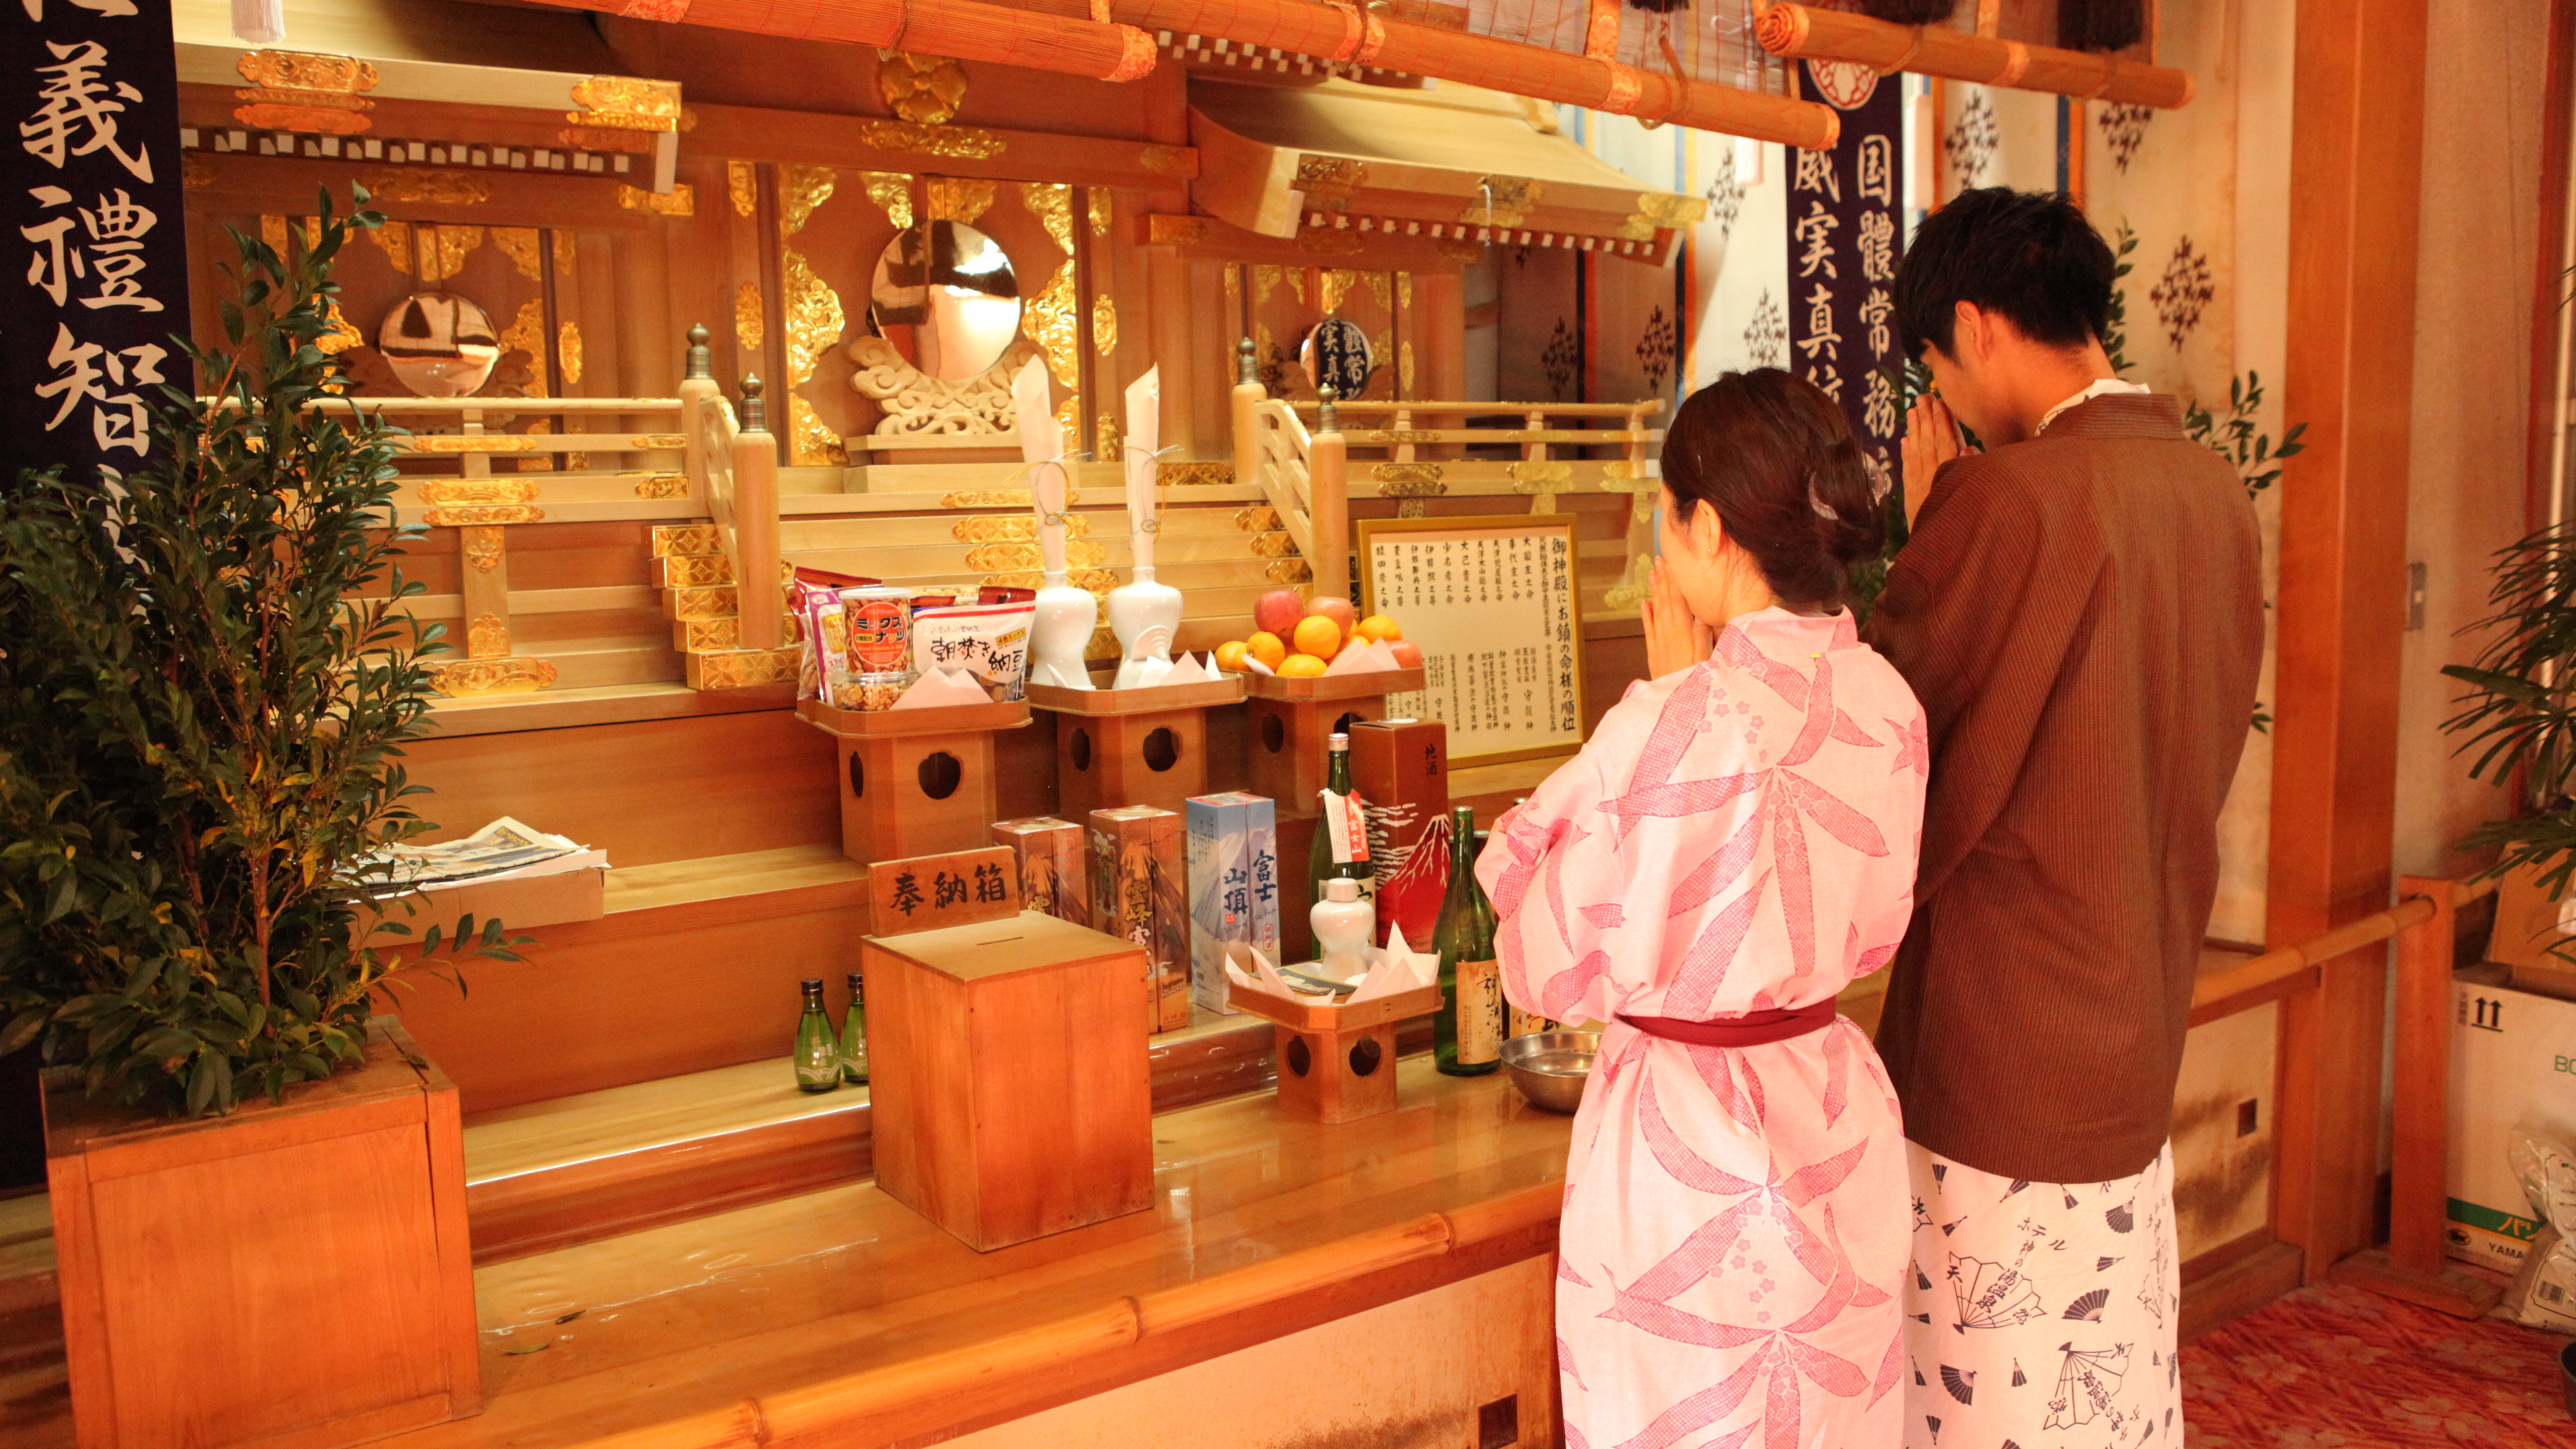 玄関を入ってすぐ左にある大きな神棚。温泉の神様「宝生山八津御獄神社」を祭っています。